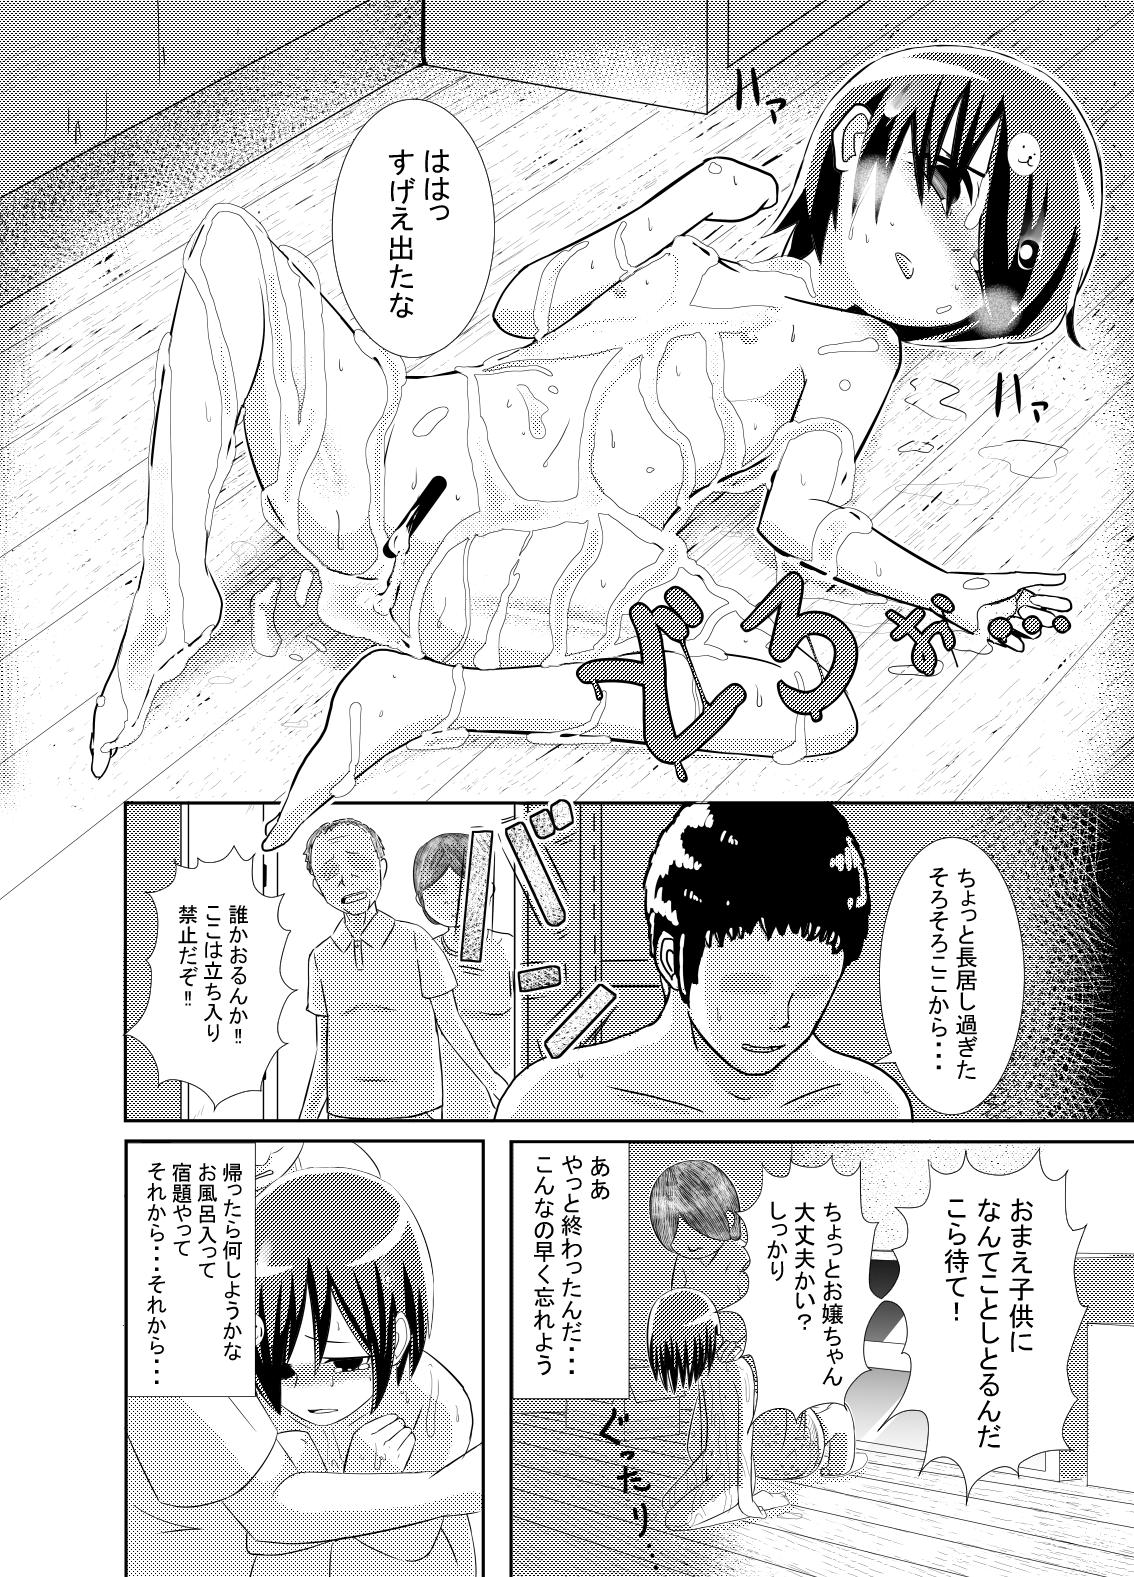 Kawaisou-kei Manga 23